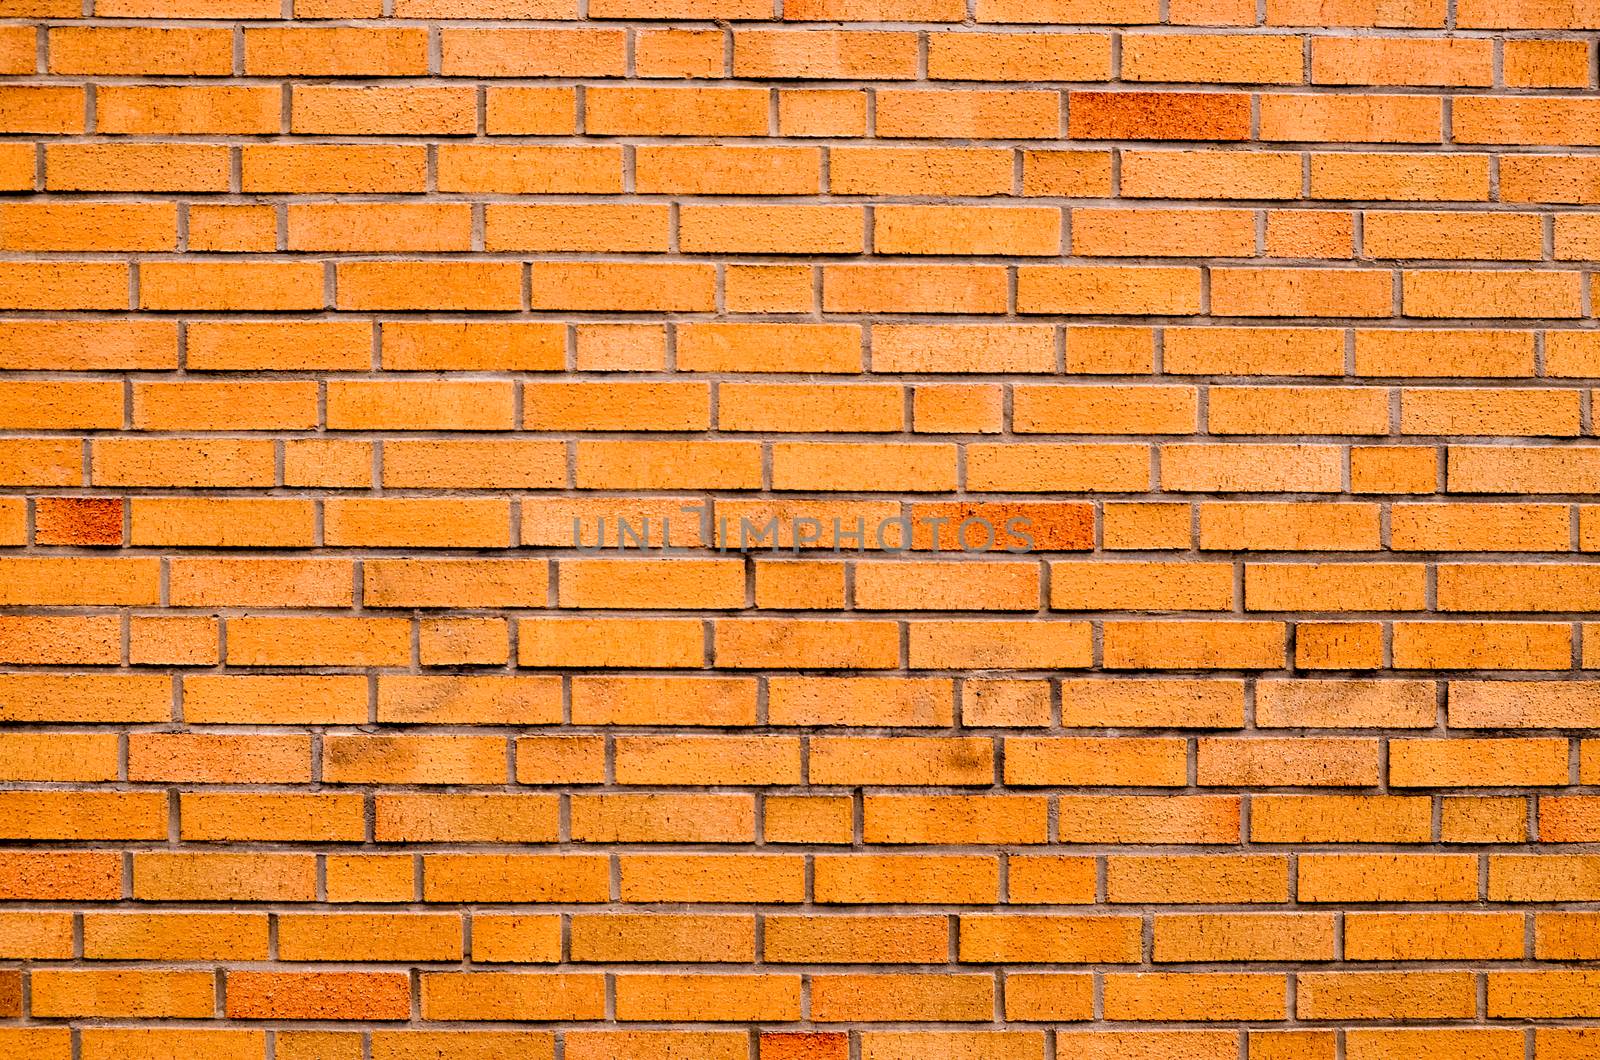 Grunge Brick Wall Texture by underworld